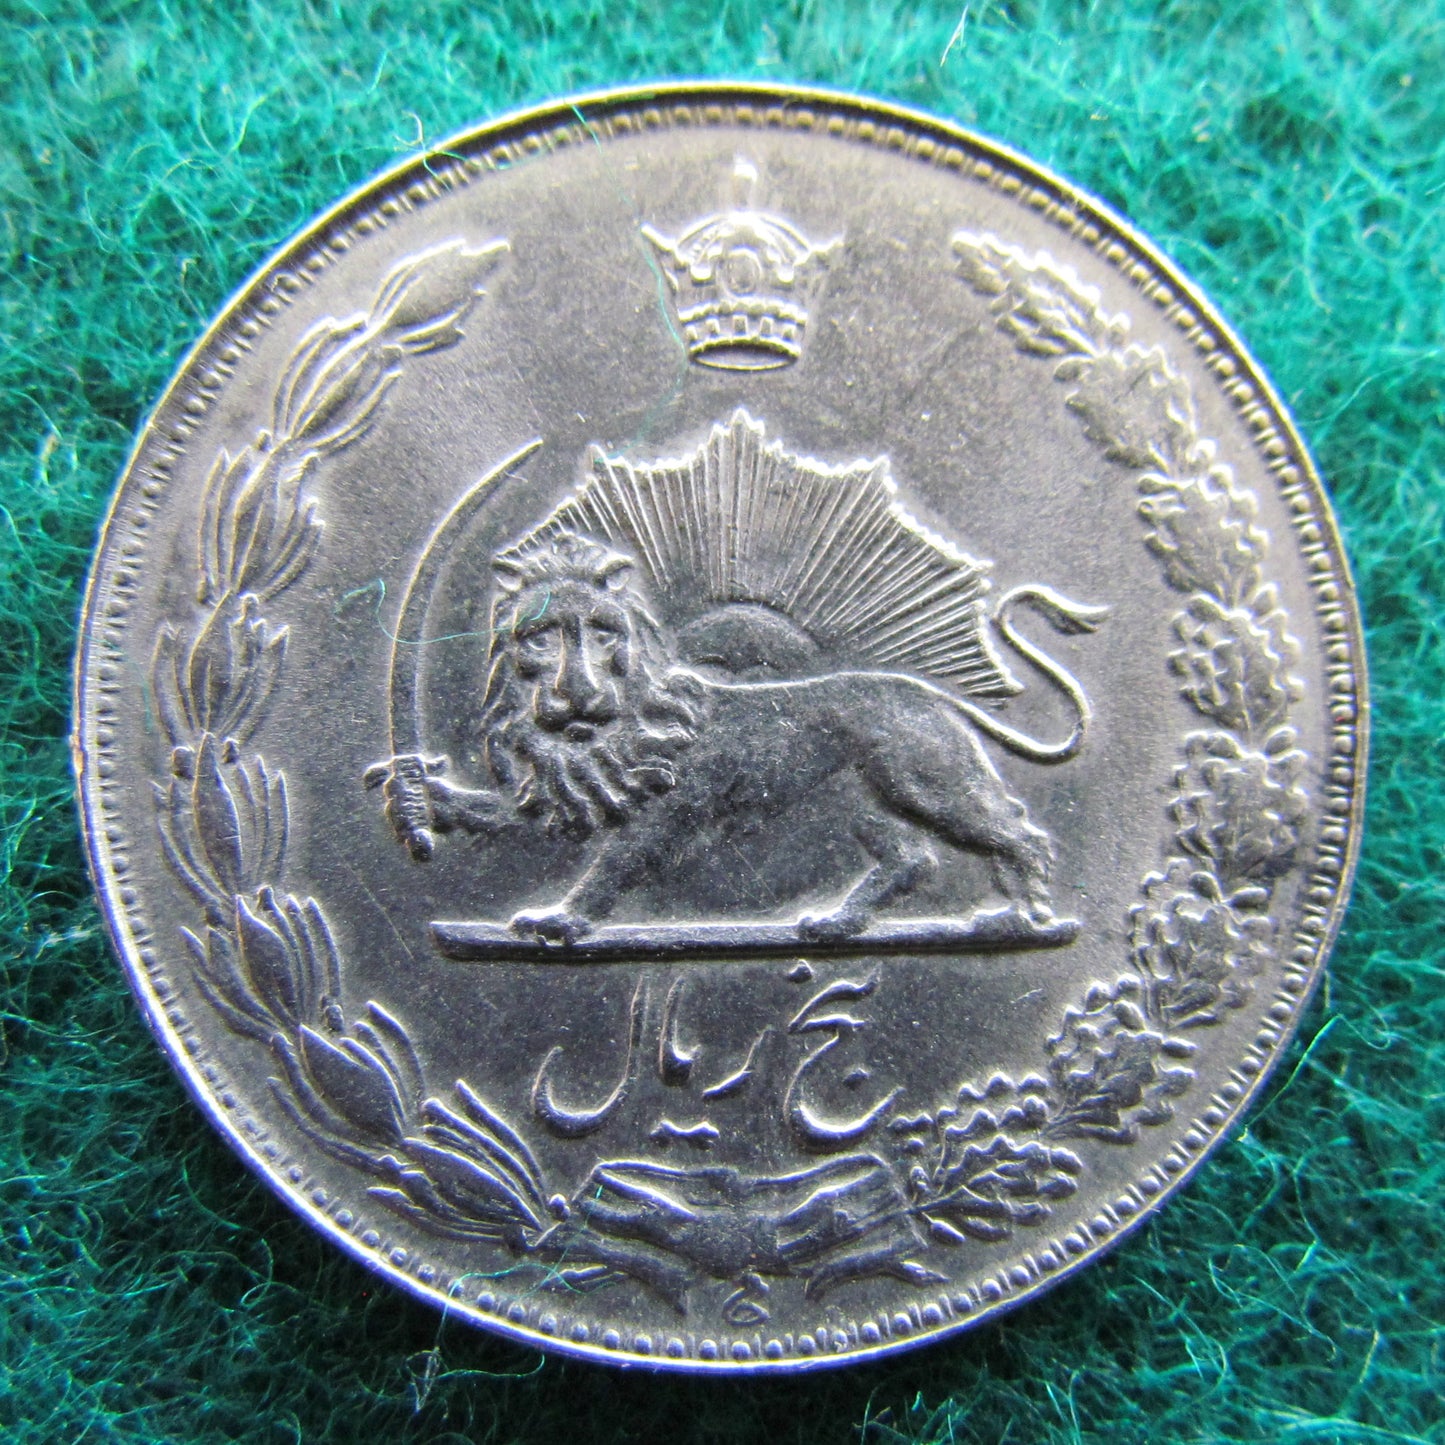 Iran 1972 5 Rials Sha Mohammad Reza Pahlavi Coin - Circulated